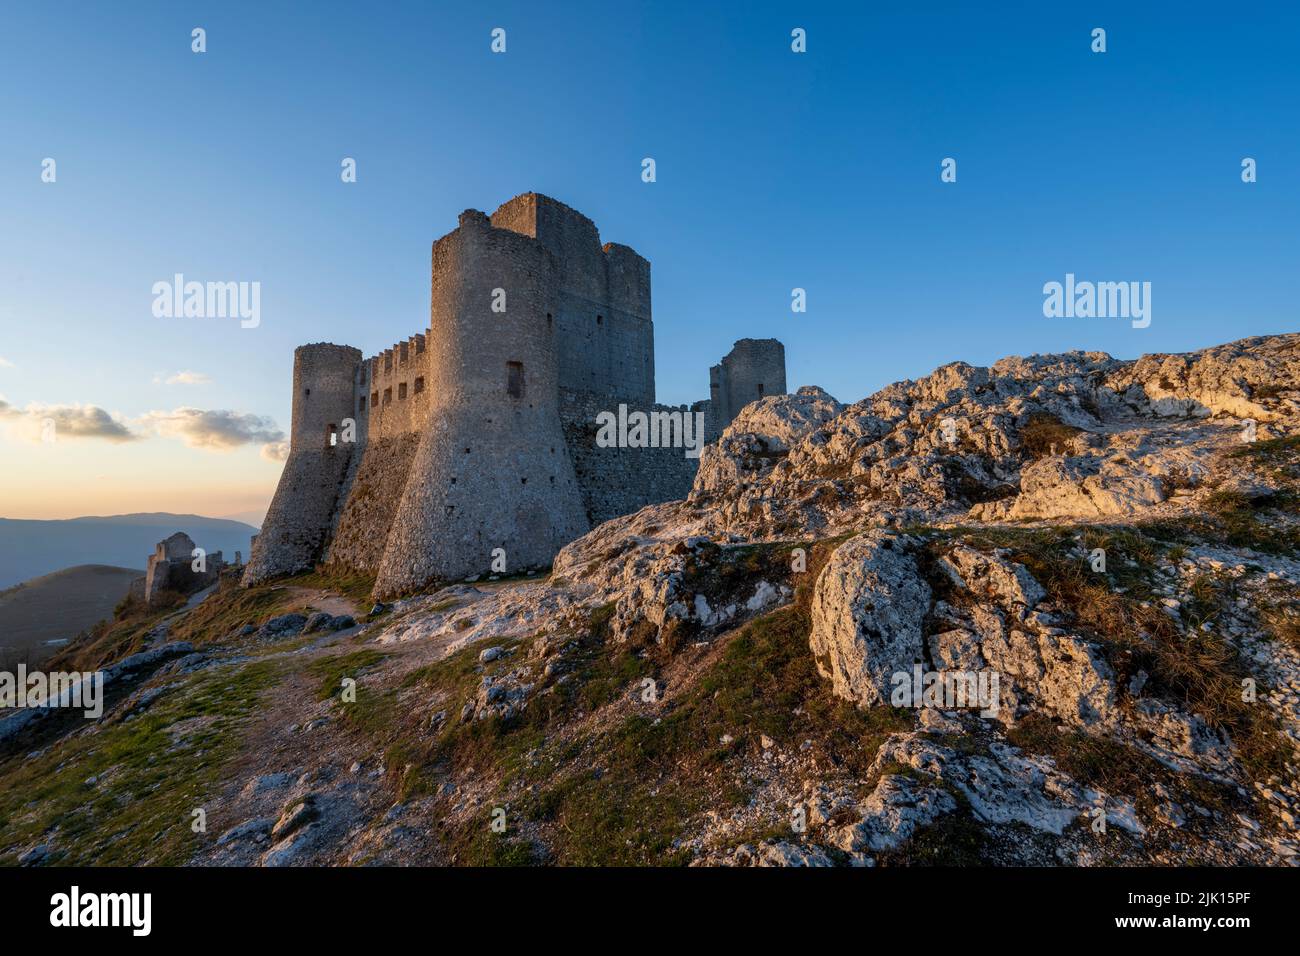 Rocca Calascio, Calascio, L'Aquila, Abruzzo, Italy, Europe Stock Photo